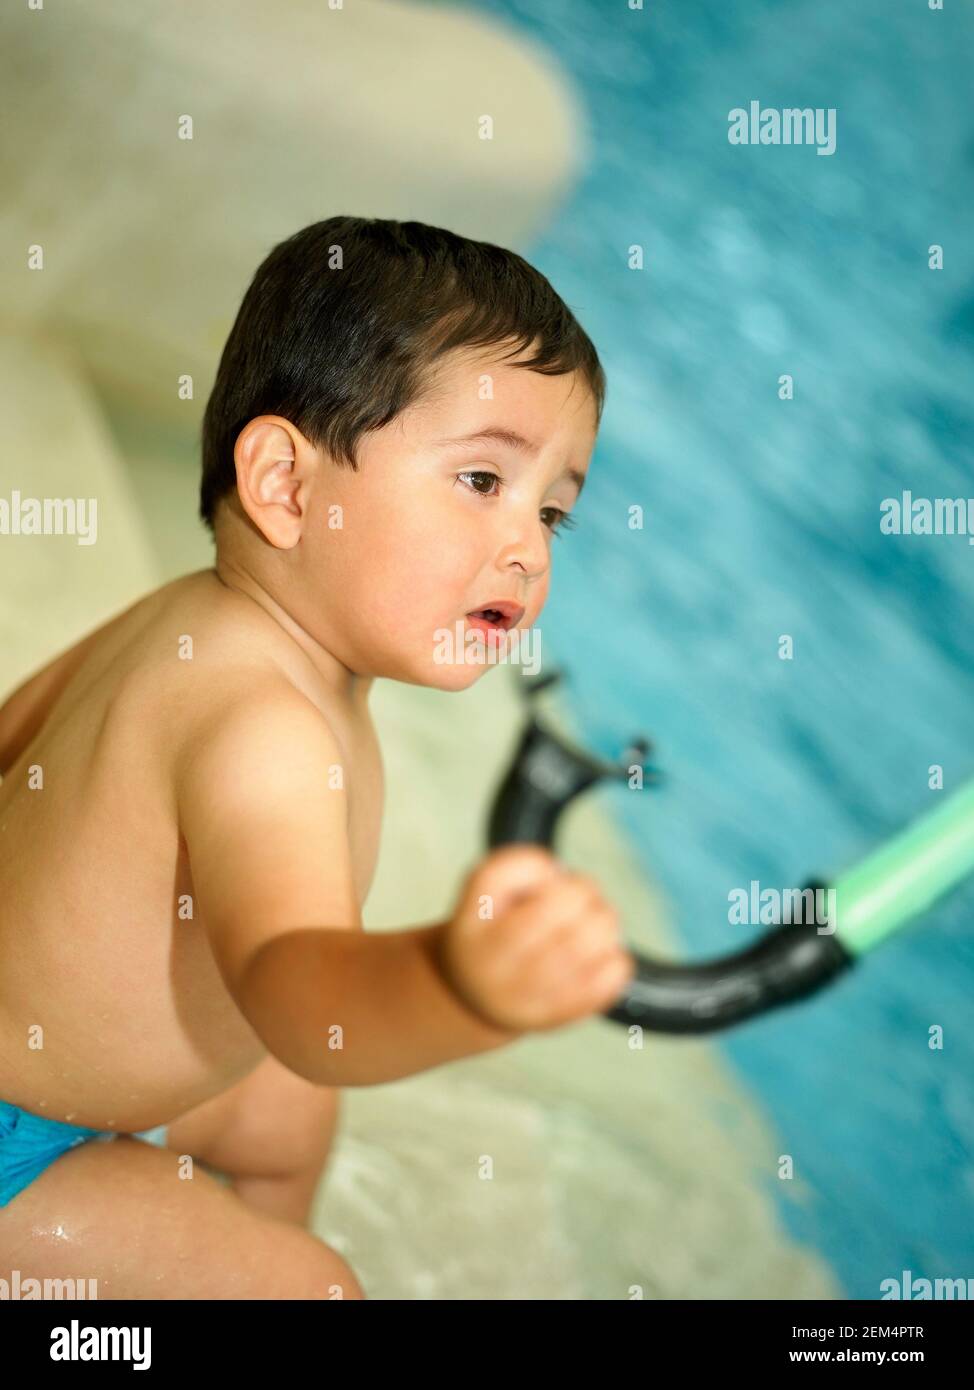 Profil latéral d'un bébé garçon tenant un tuba et assis près d'une piscine Banque D'Images